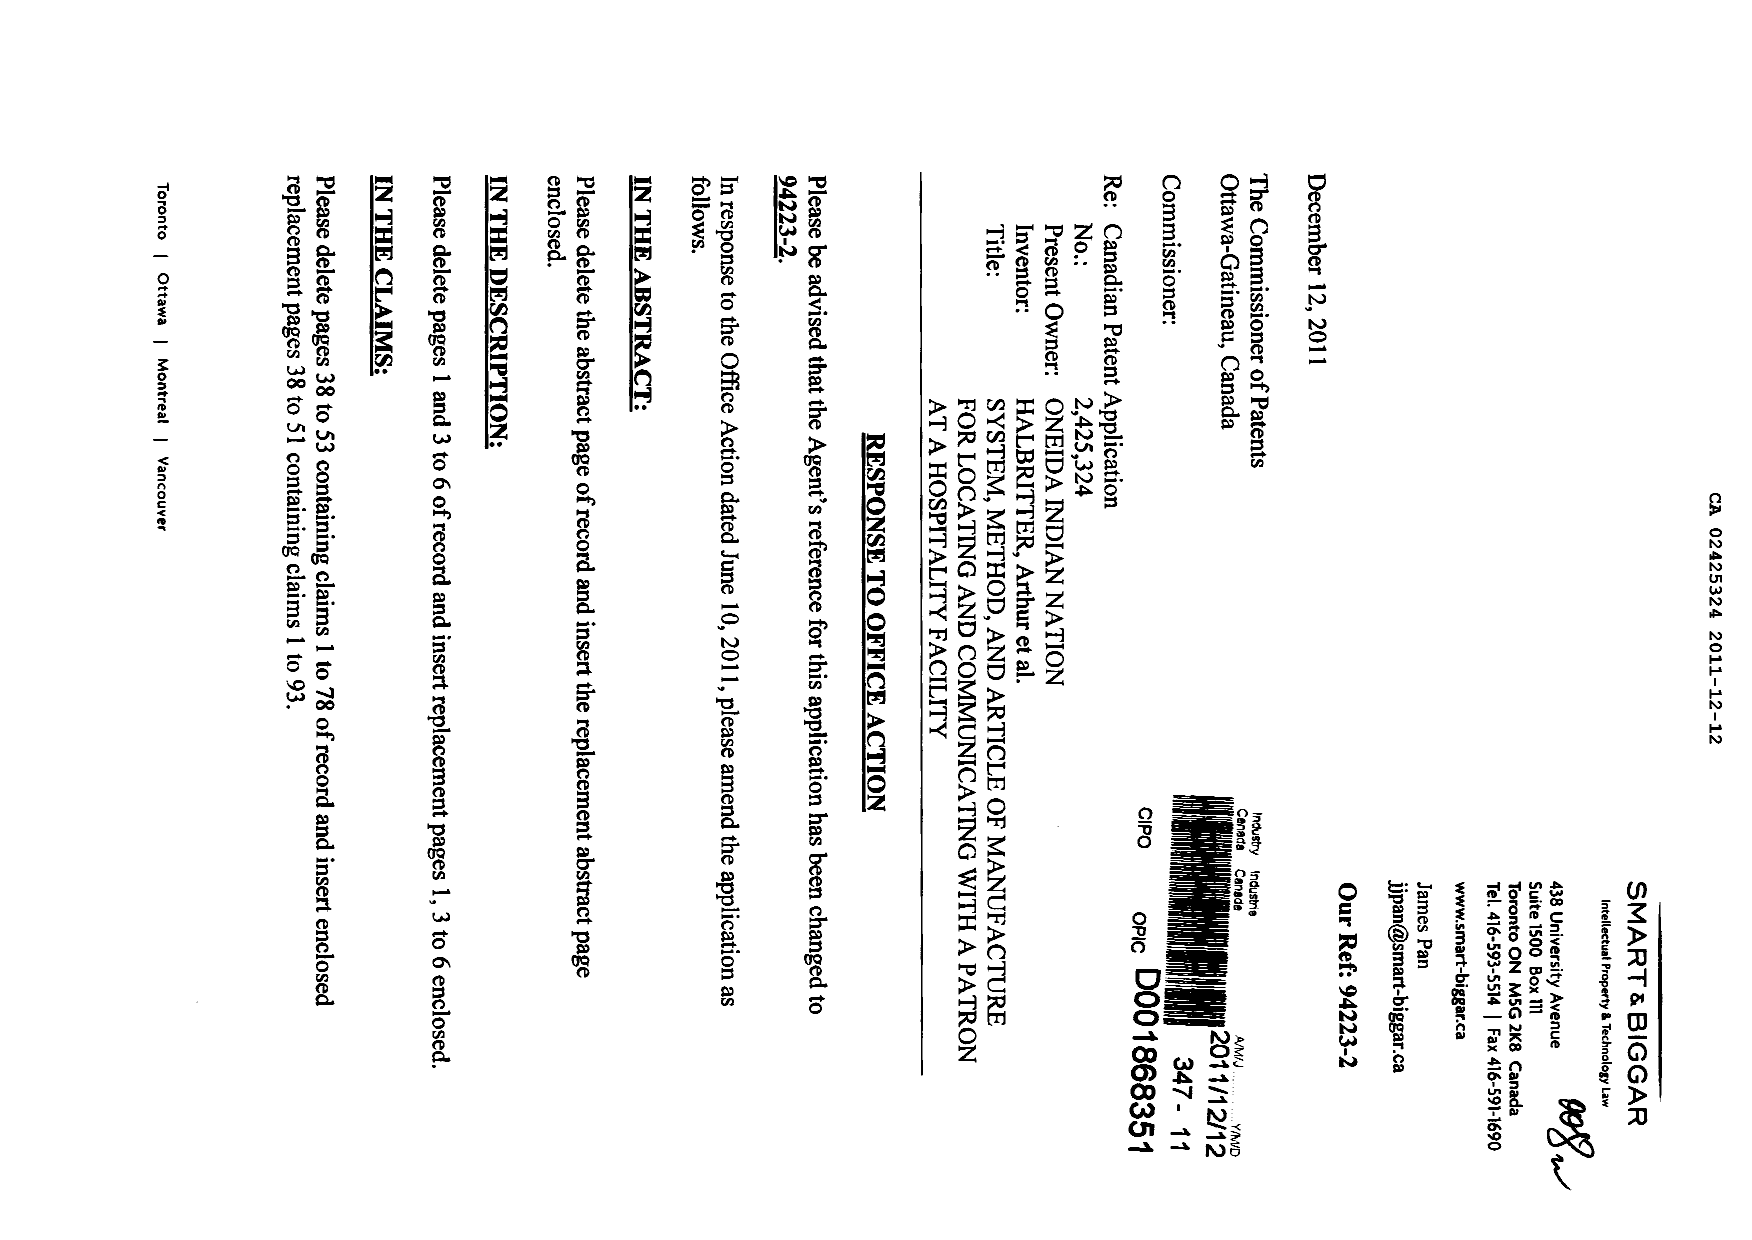 Document de brevet canadien 2425324. Poursuite-Amendment 20111212. Image 1 de 23